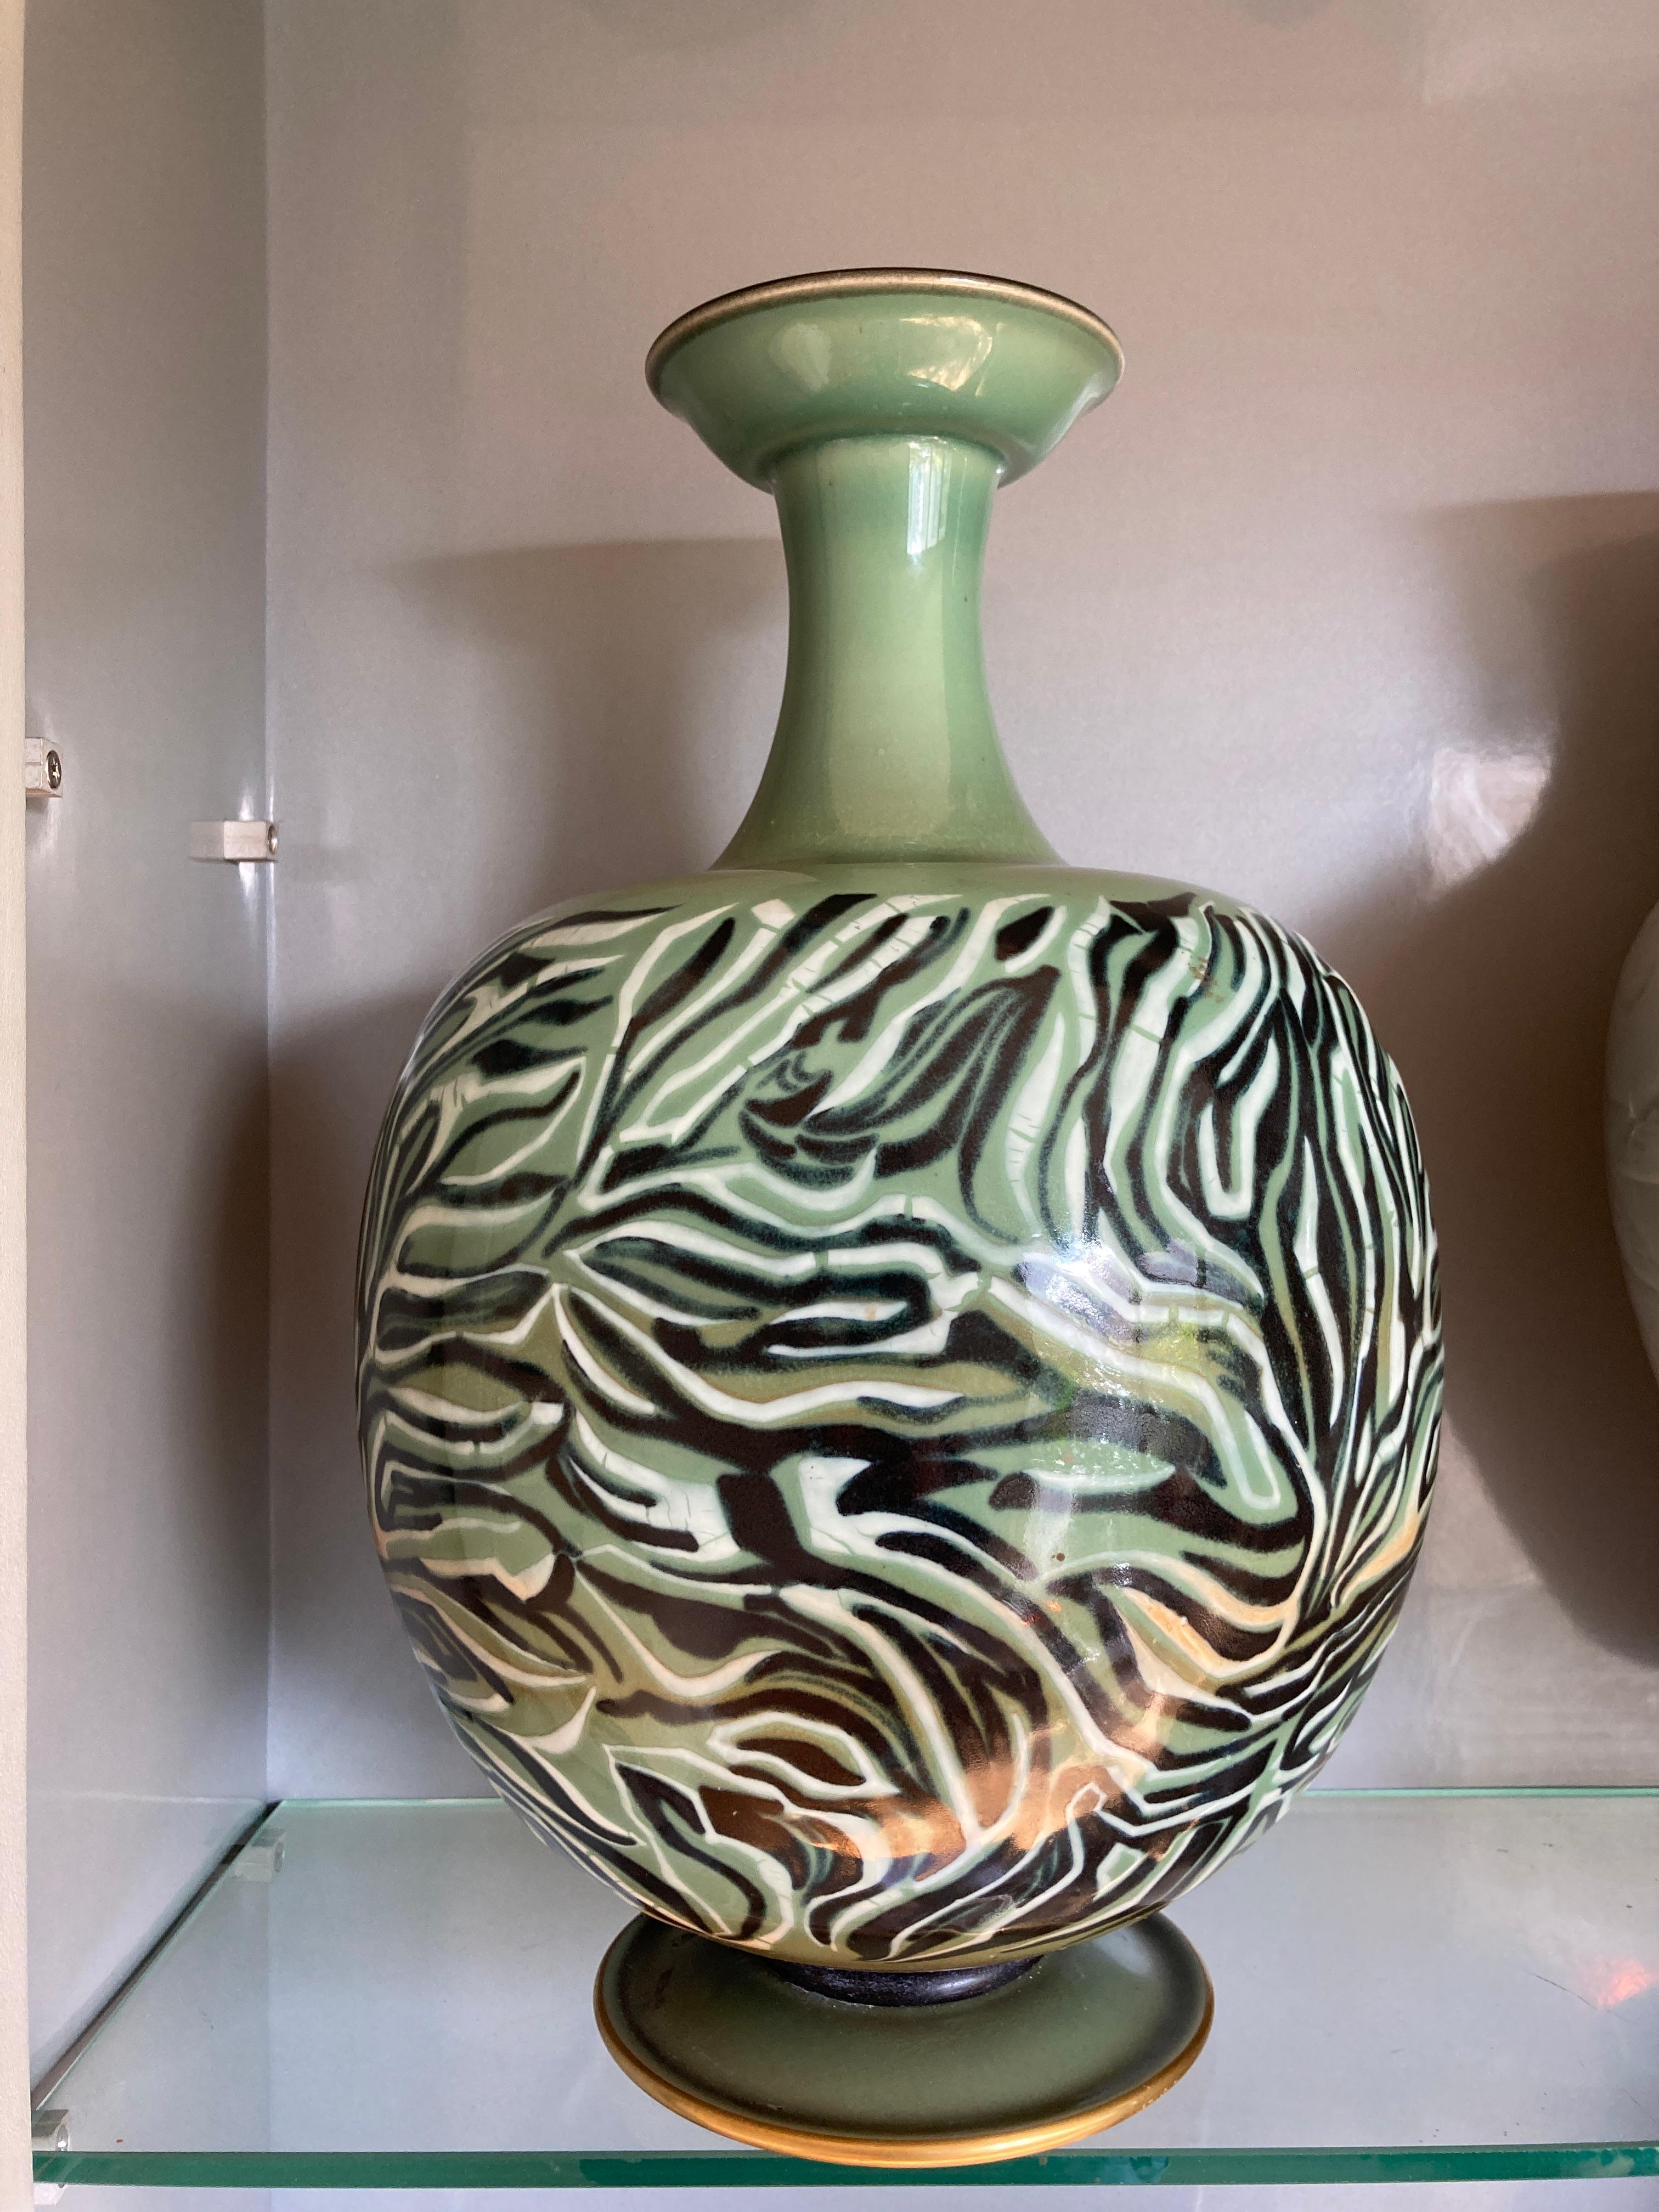 Sehr schöne Porzellanvase von Manufacture Nationale de Sèvres
Die berühmteste Porzellanfabrik der Welt.
Vase signiert von Andre Plantard
Datiert 1963 
Dies ist ein seltenes Stück, das sich in Museen befindet und in Büchern dokumentiert ist